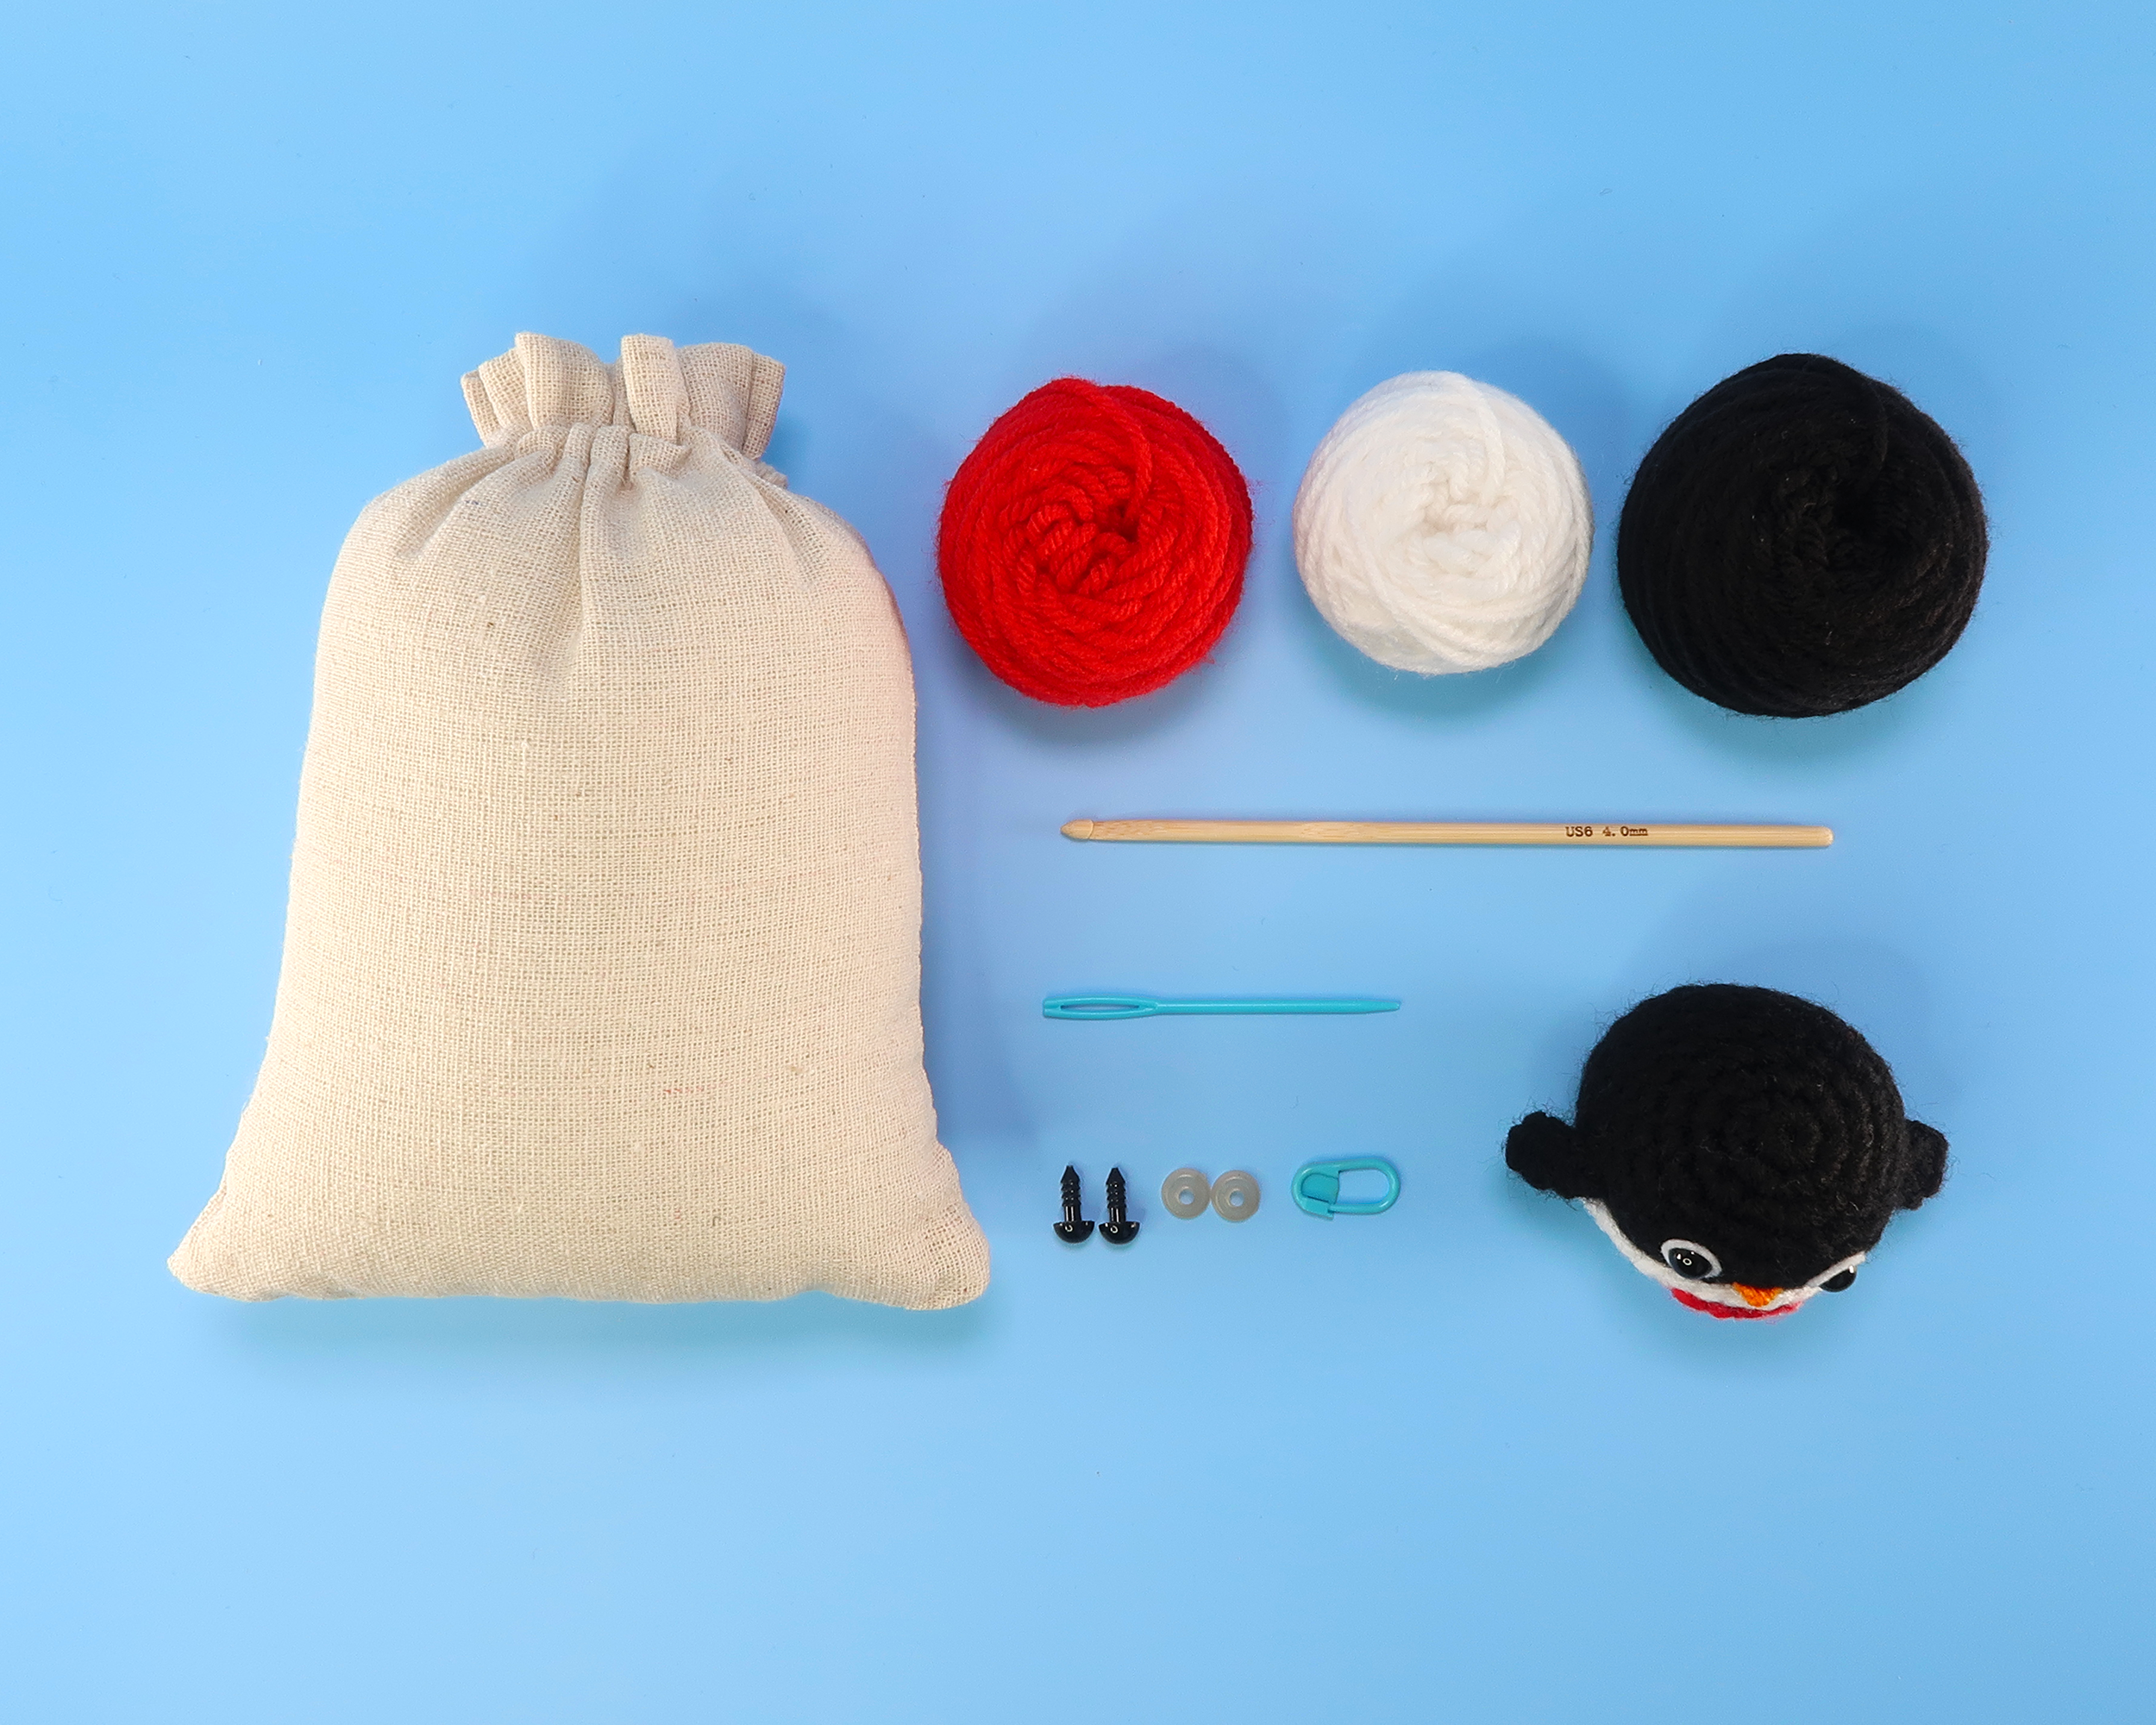 Mr. Penguin Crochet Kit & Pattern